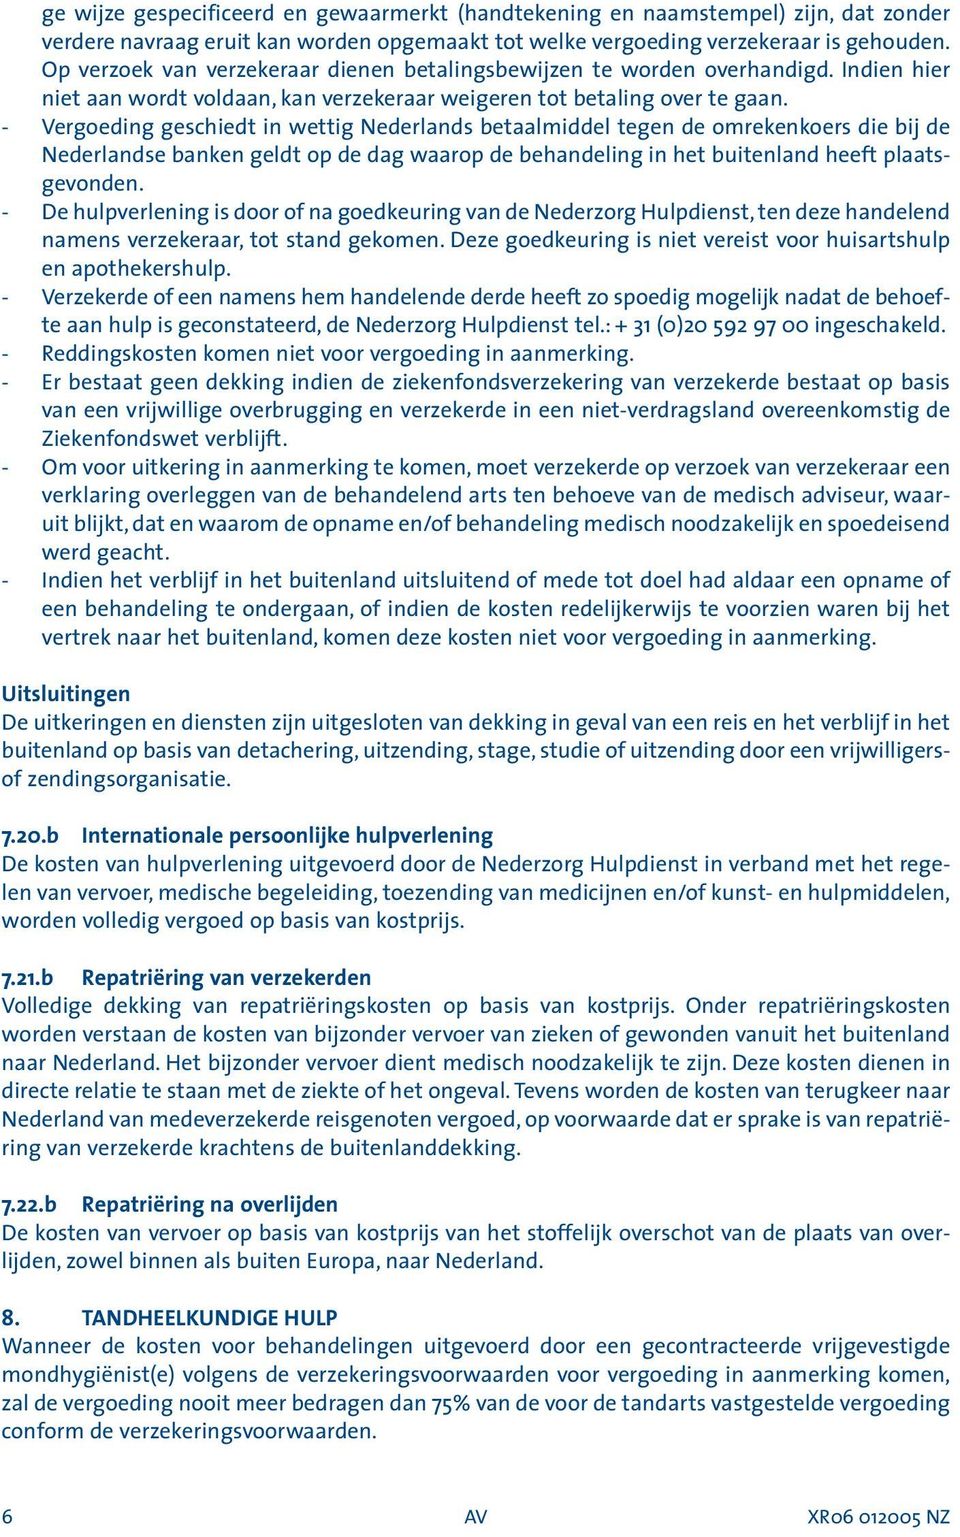 - Vergoeding geschiedt in wettig Nederlands betaalmiddel tegen de omrekenkoers die bij de Nederlandse banken geldt op de dag waarop de behandeling in het buitenland heeft plaatsgevonden.